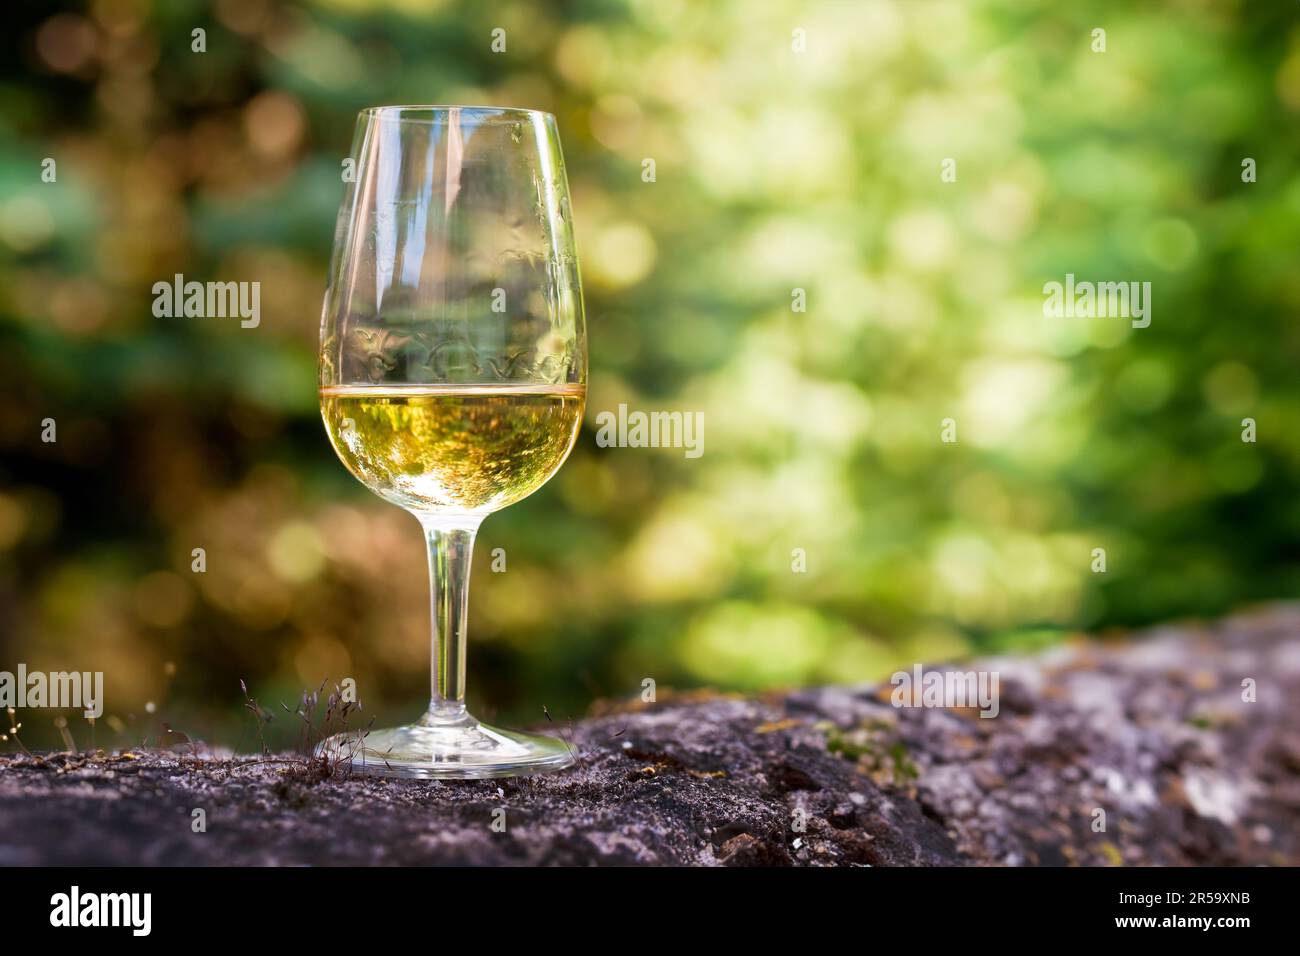 Gros plan sur un verre de vin blanc, nature verte en plein air Banque D'Images